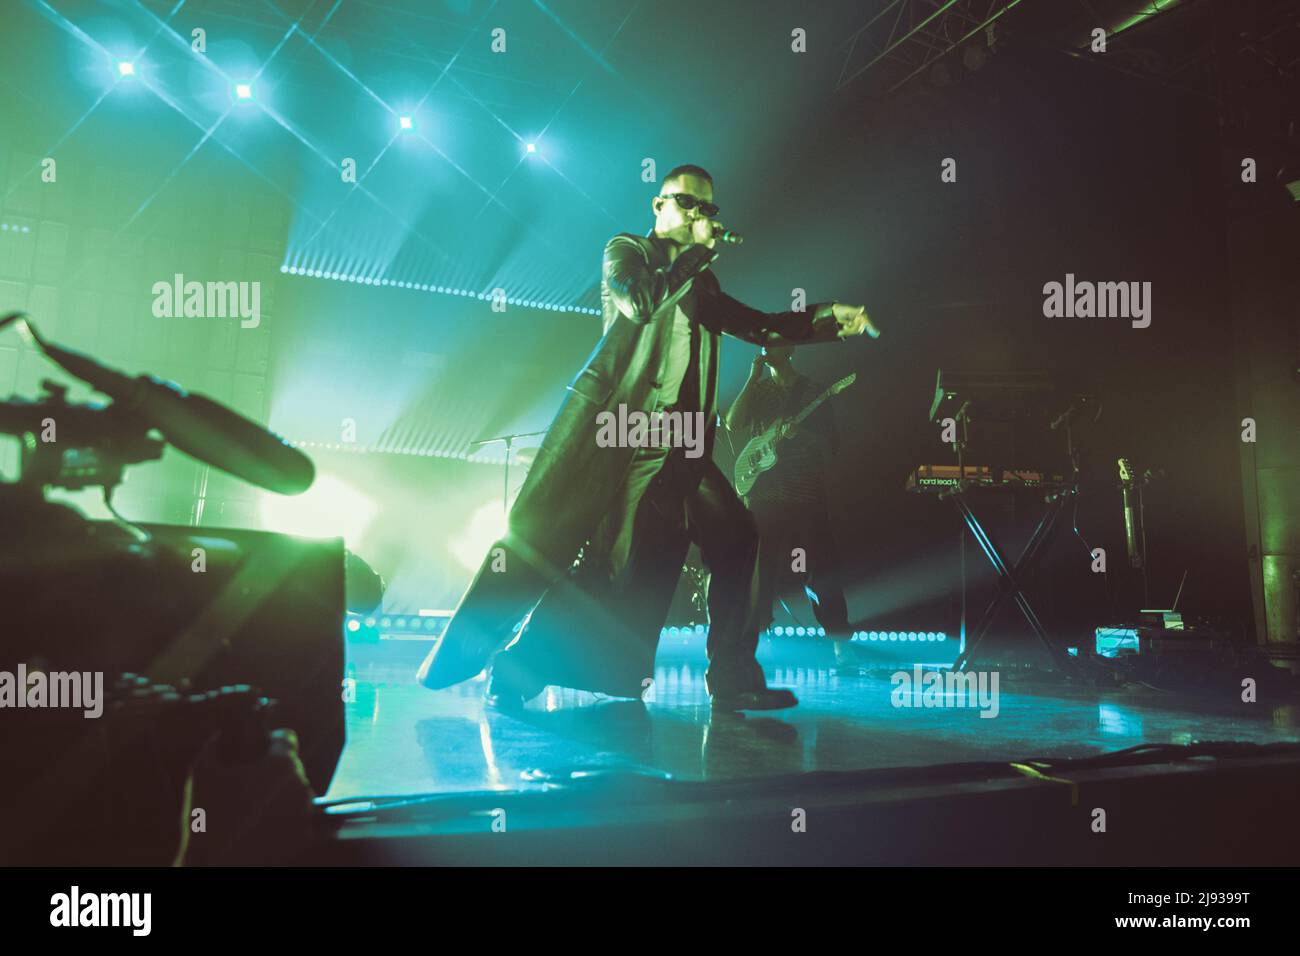 18/05/2022 - Italian singer MAHMOOD playing live at Alcatraz Milano, Italy Stock Photo